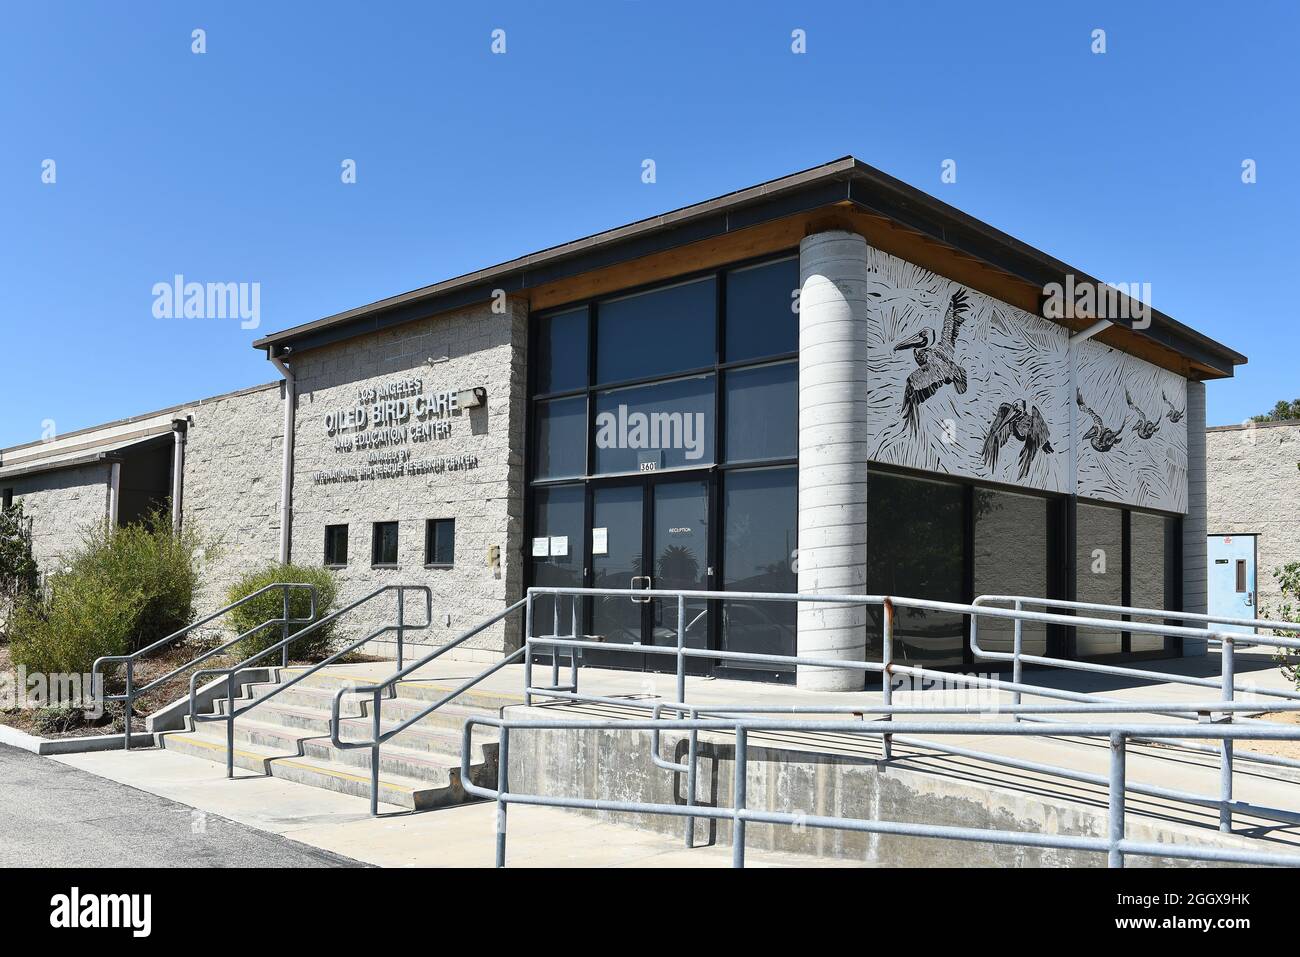 SAN PEDRO, CALIFORNIE - 27 AOÛT 2021 : Los Angeles Oiled Bird Care and Education Center, traite les oiseaux de mer, les barboteuse et la sauvagine affectés par le SPI du pétrole Banque D'Images